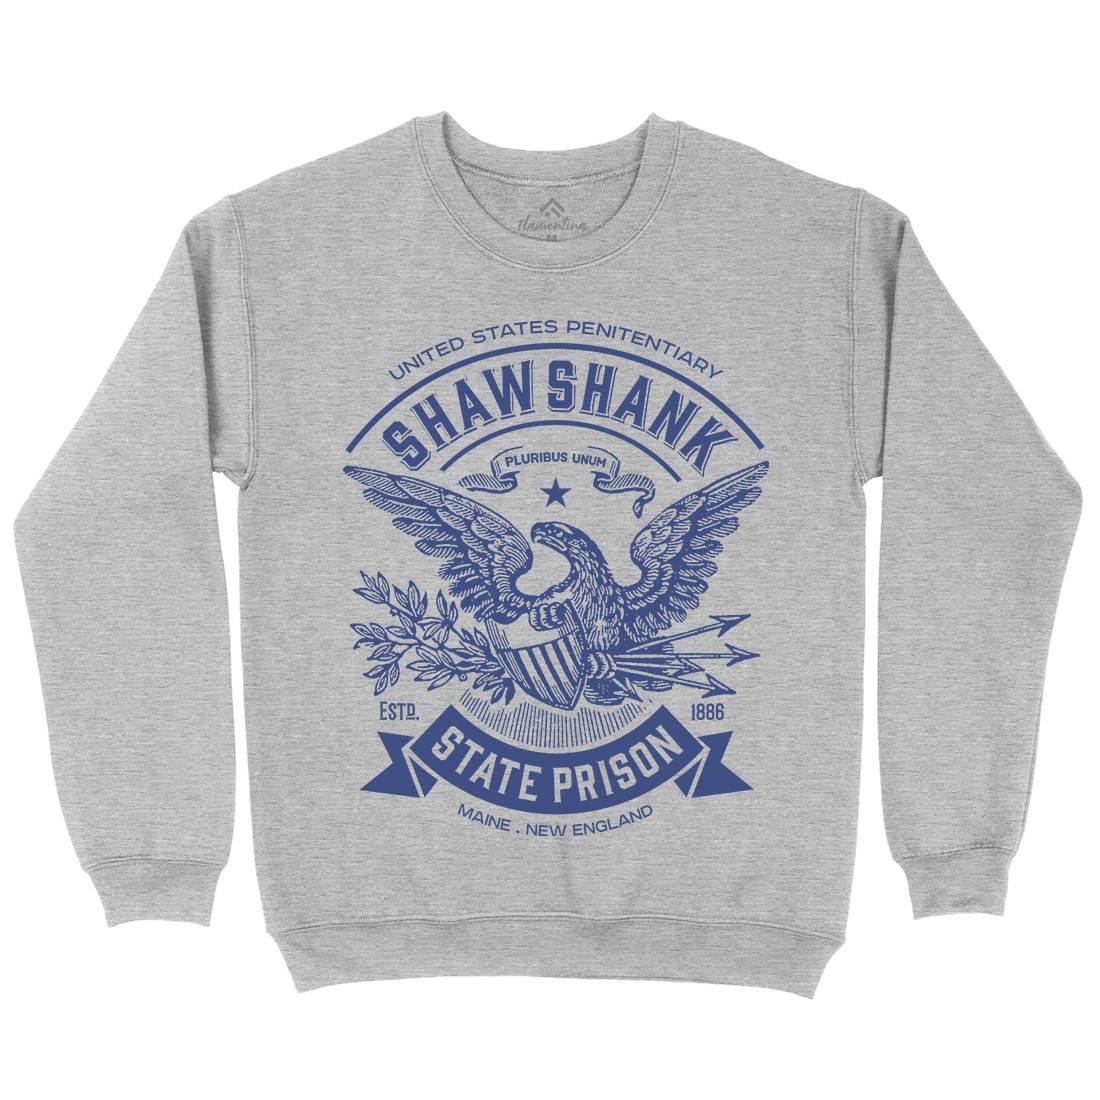 Shawshank Prison Kids Crew Neck Sweatshirt Retro D355